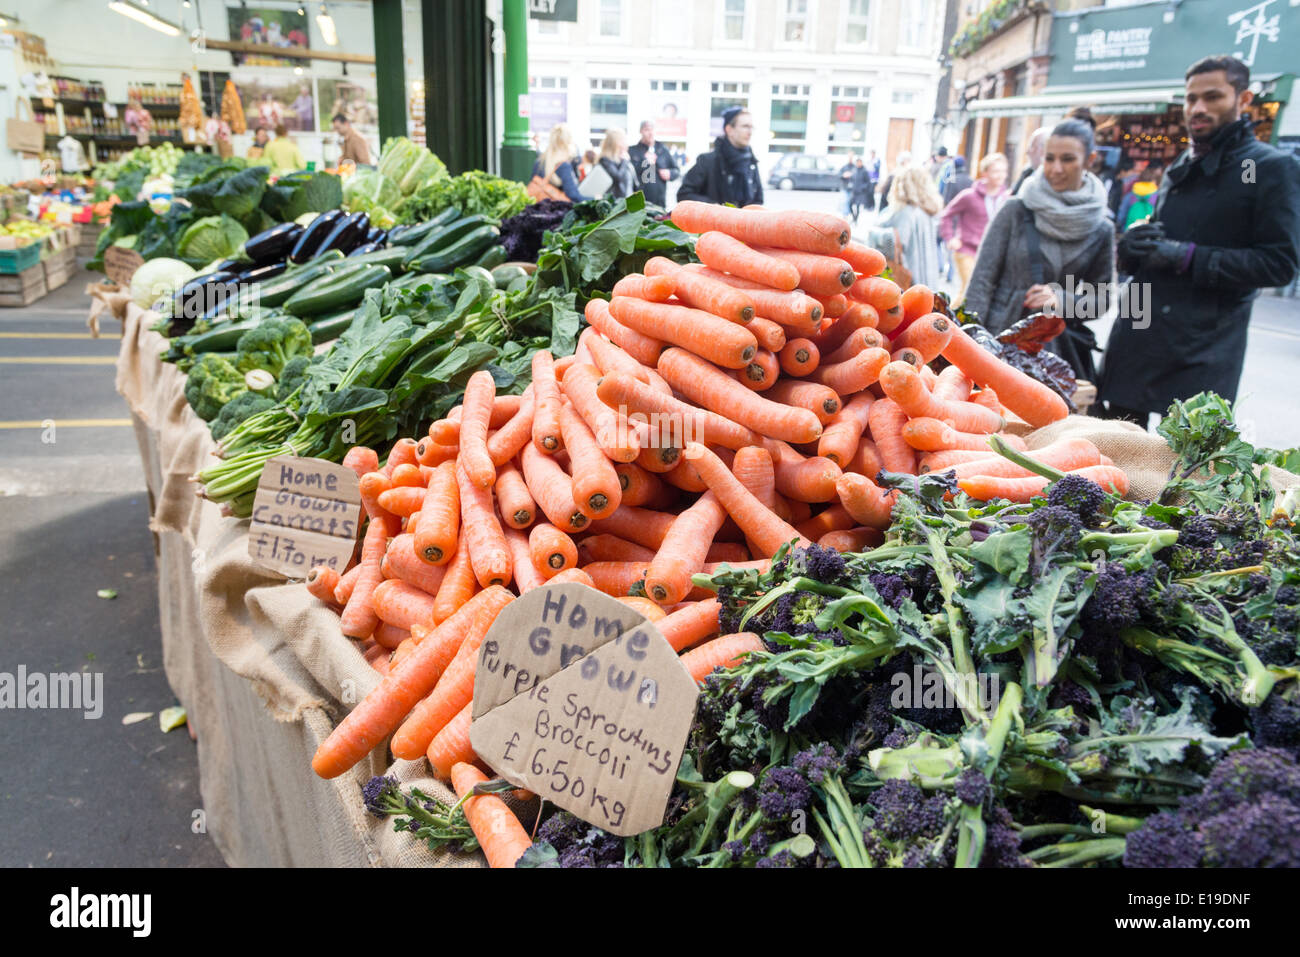 Kiosque de légumes à Borough Market, London, England, UK Banque D'Images